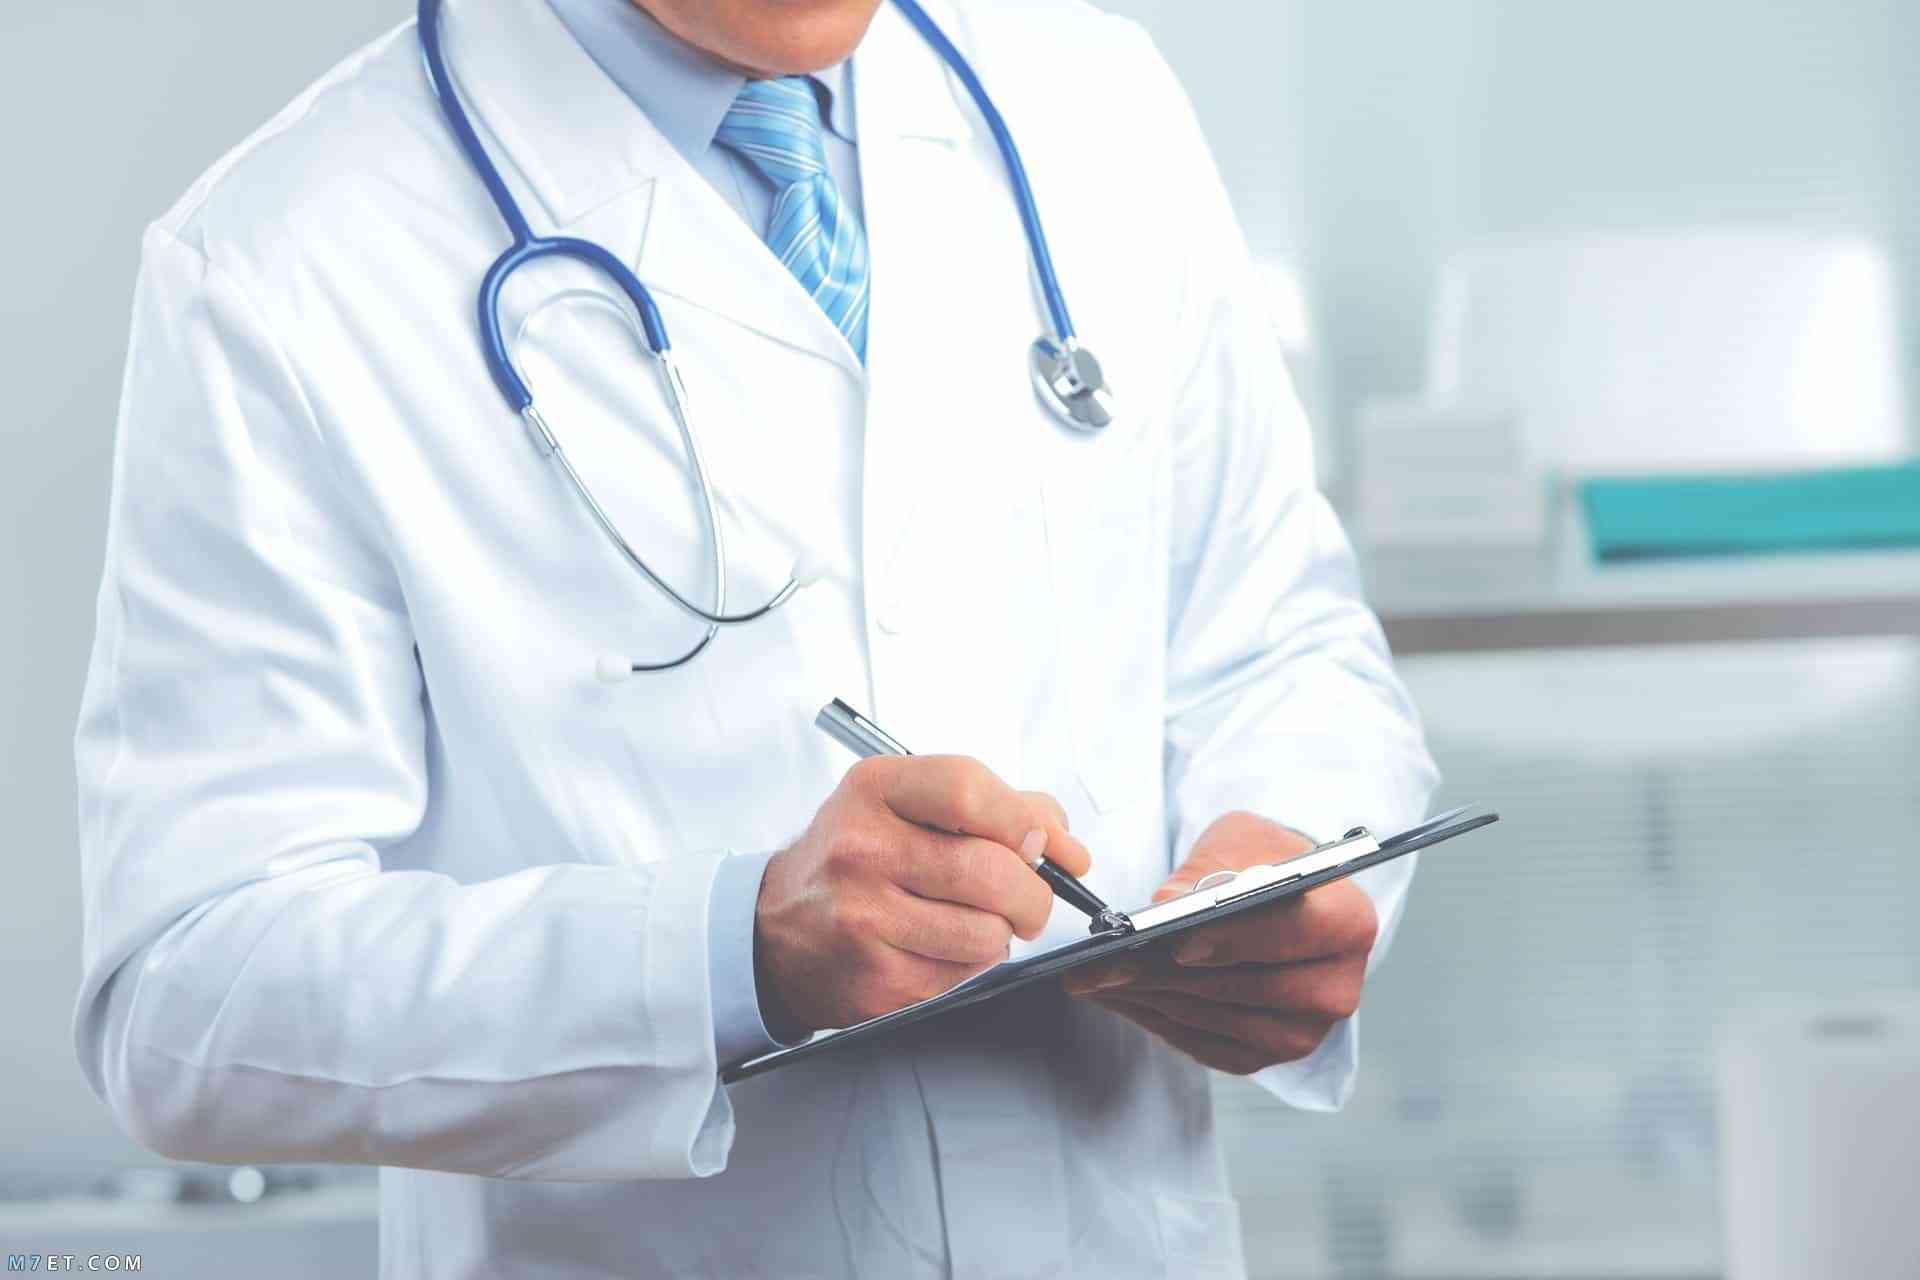 نقابة الأطباء توضح حول الإلتزام بنظام البصمة